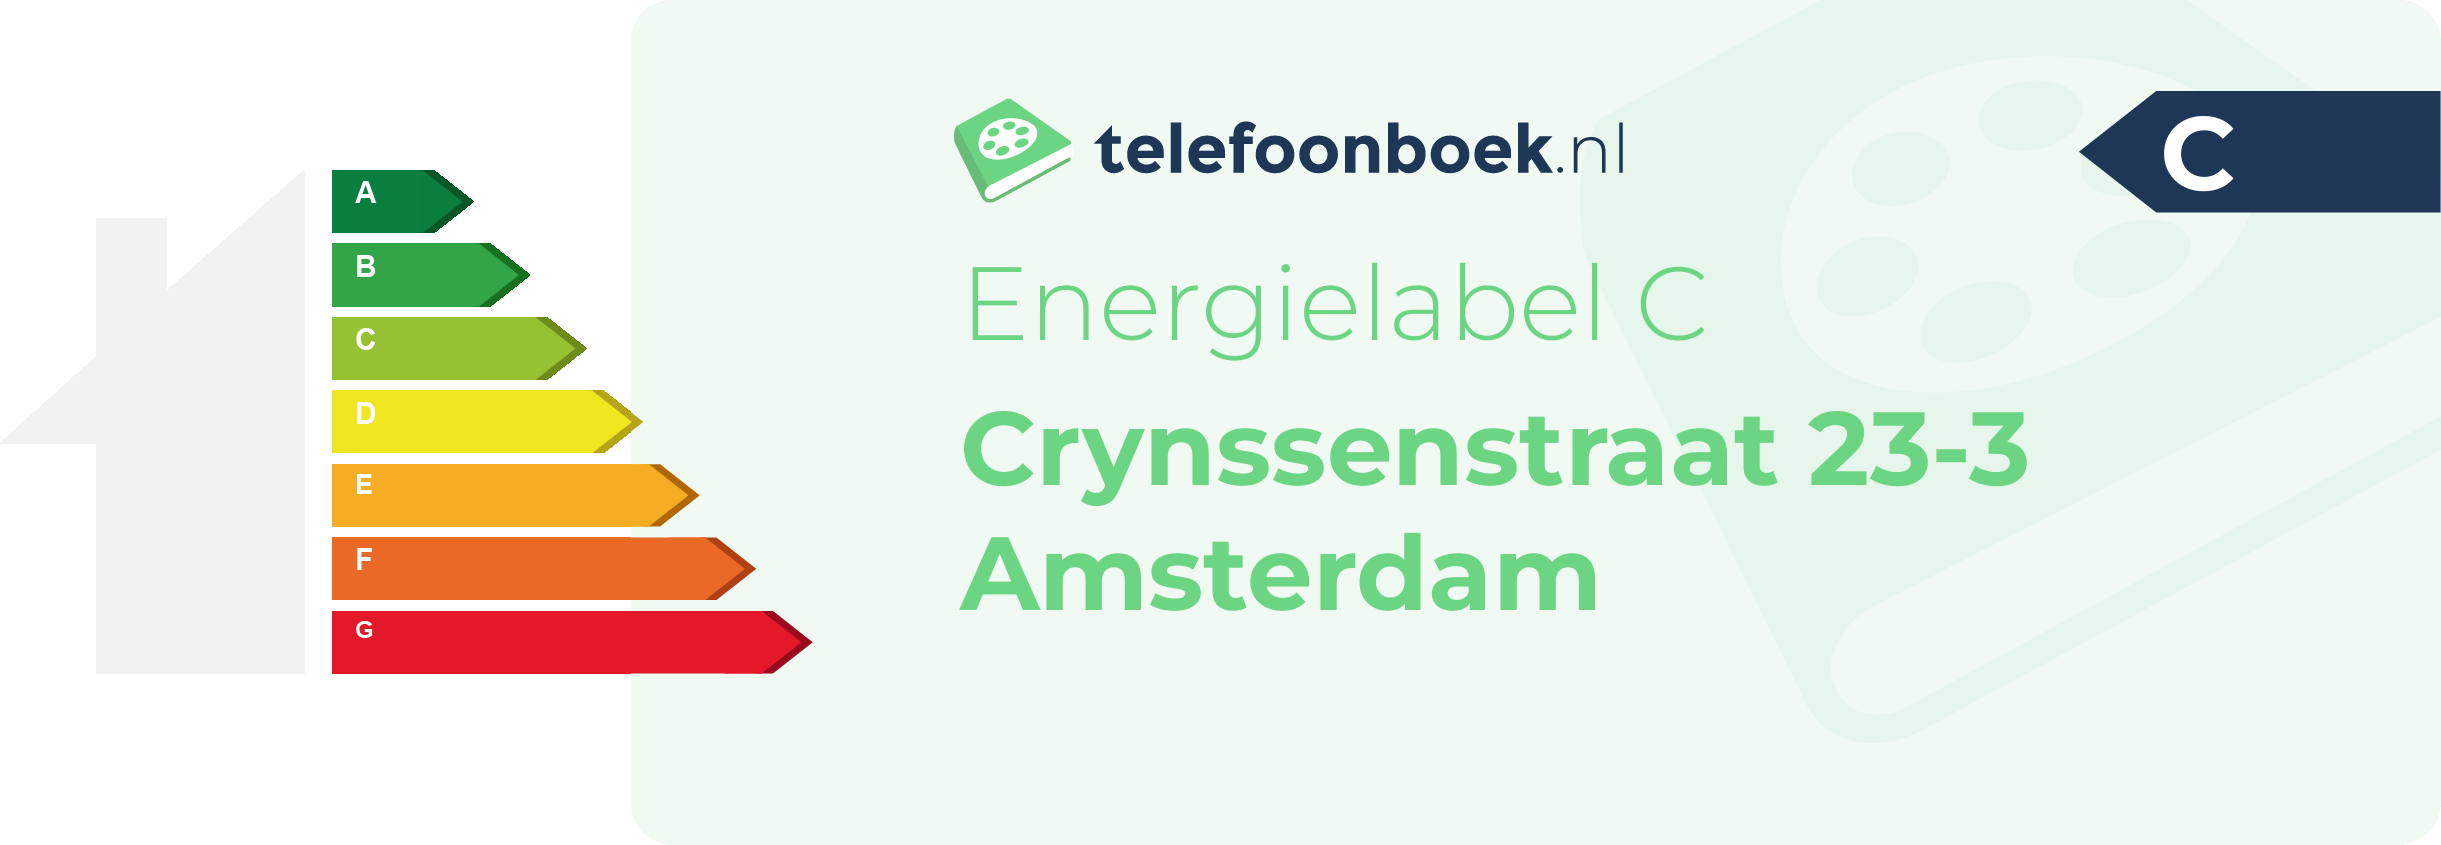 Energielabel Crynssenstraat 23-3 Amsterdam